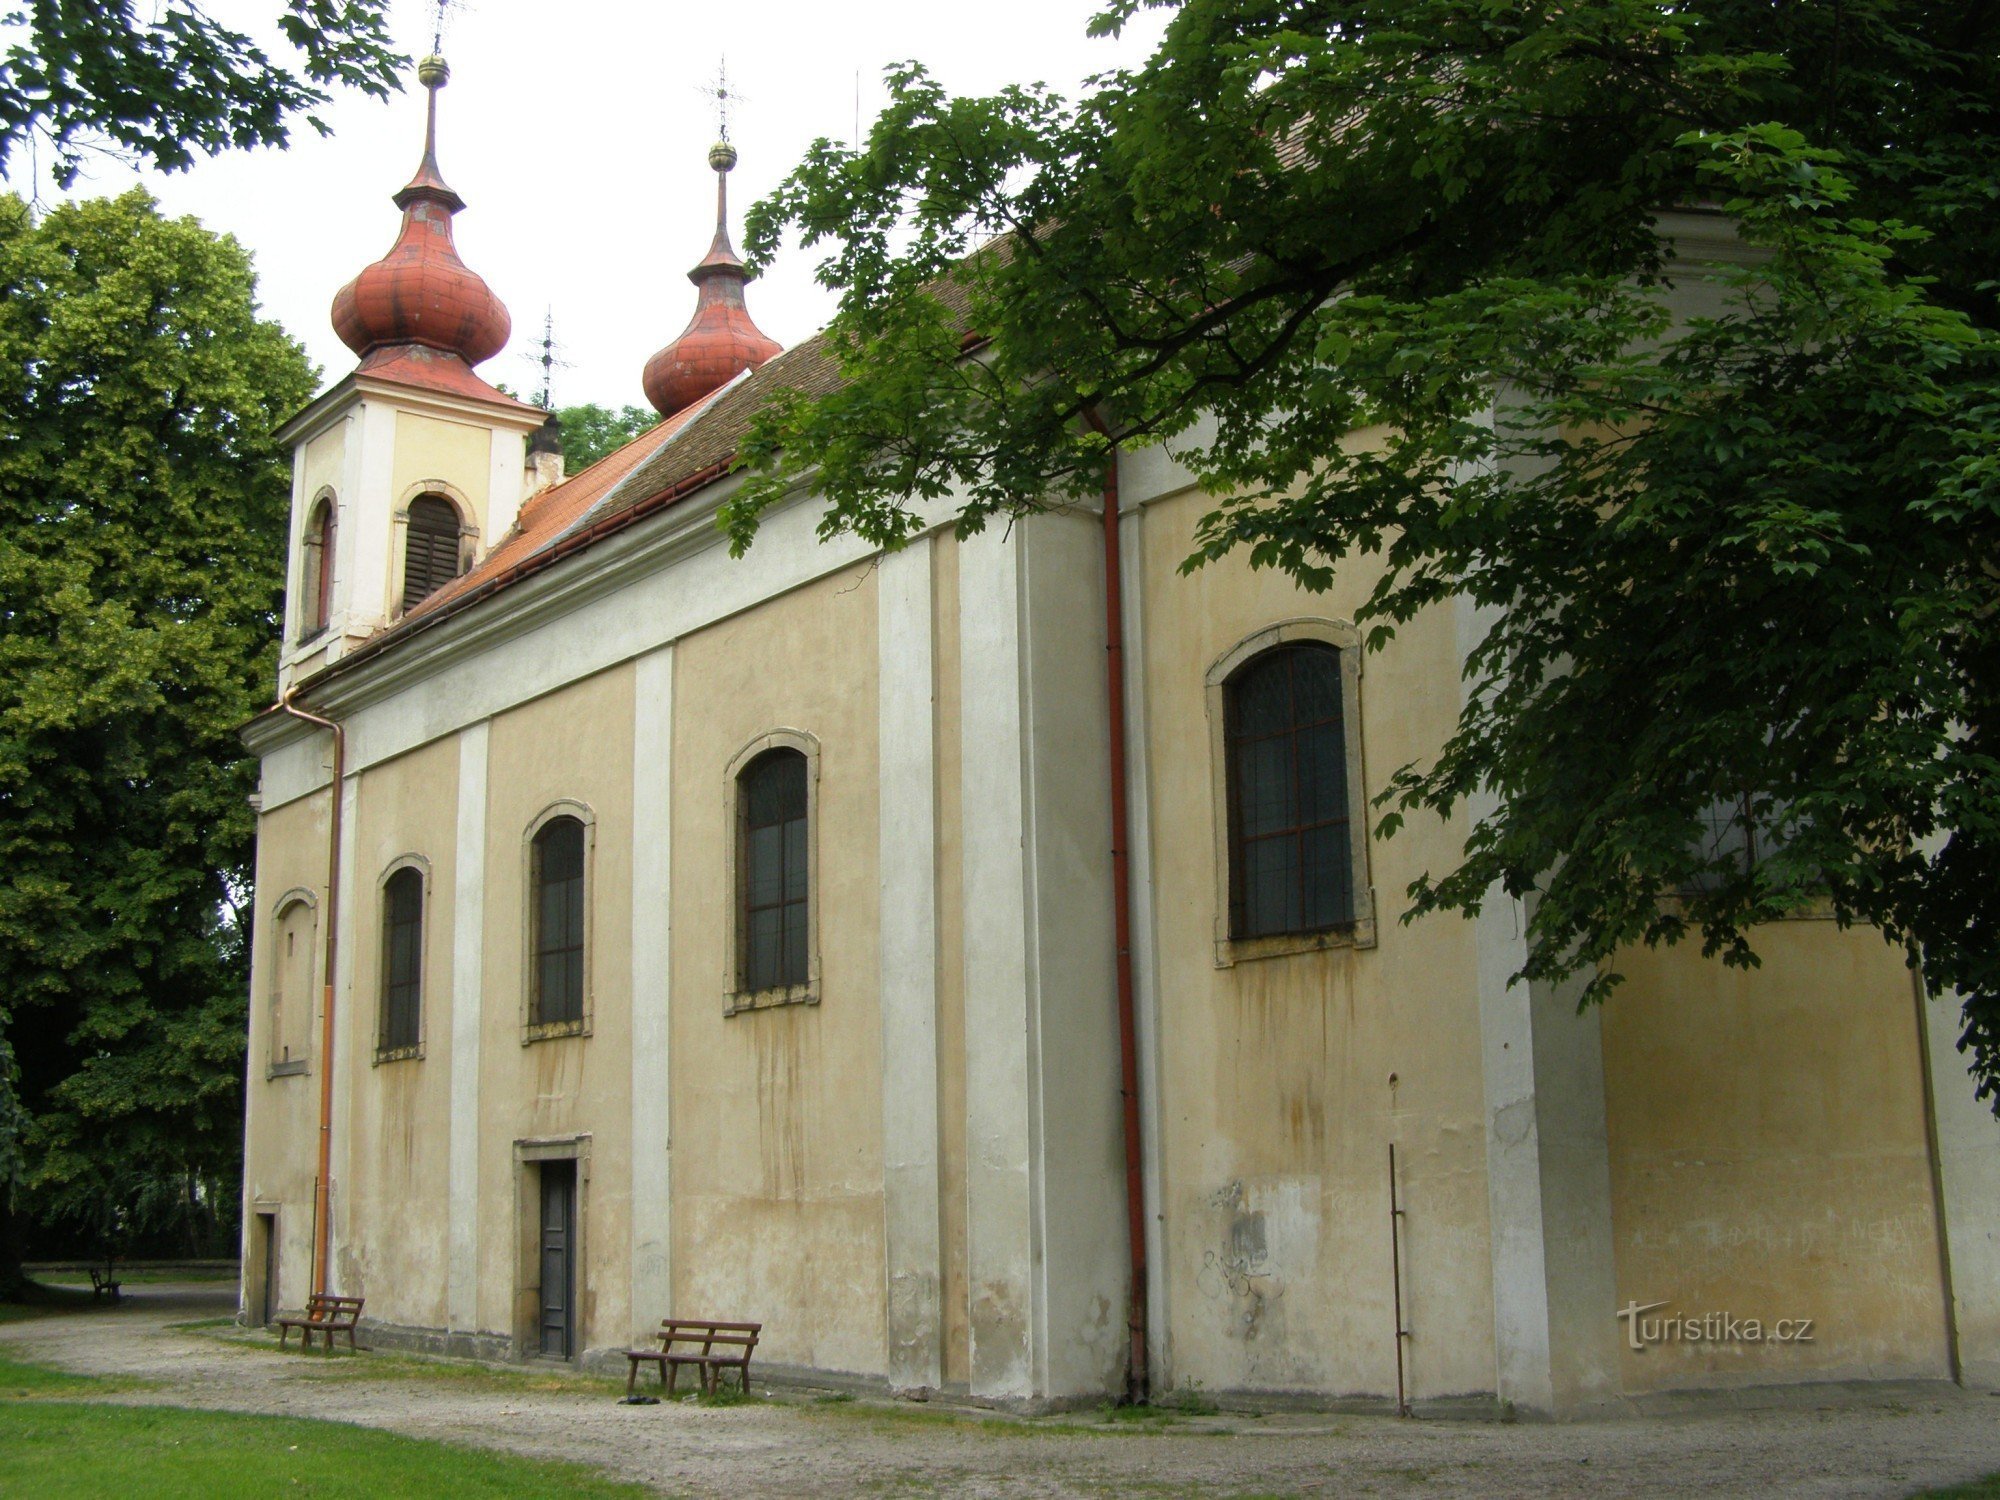 Nový Bydžov - Den heliga treenighetens kyrka